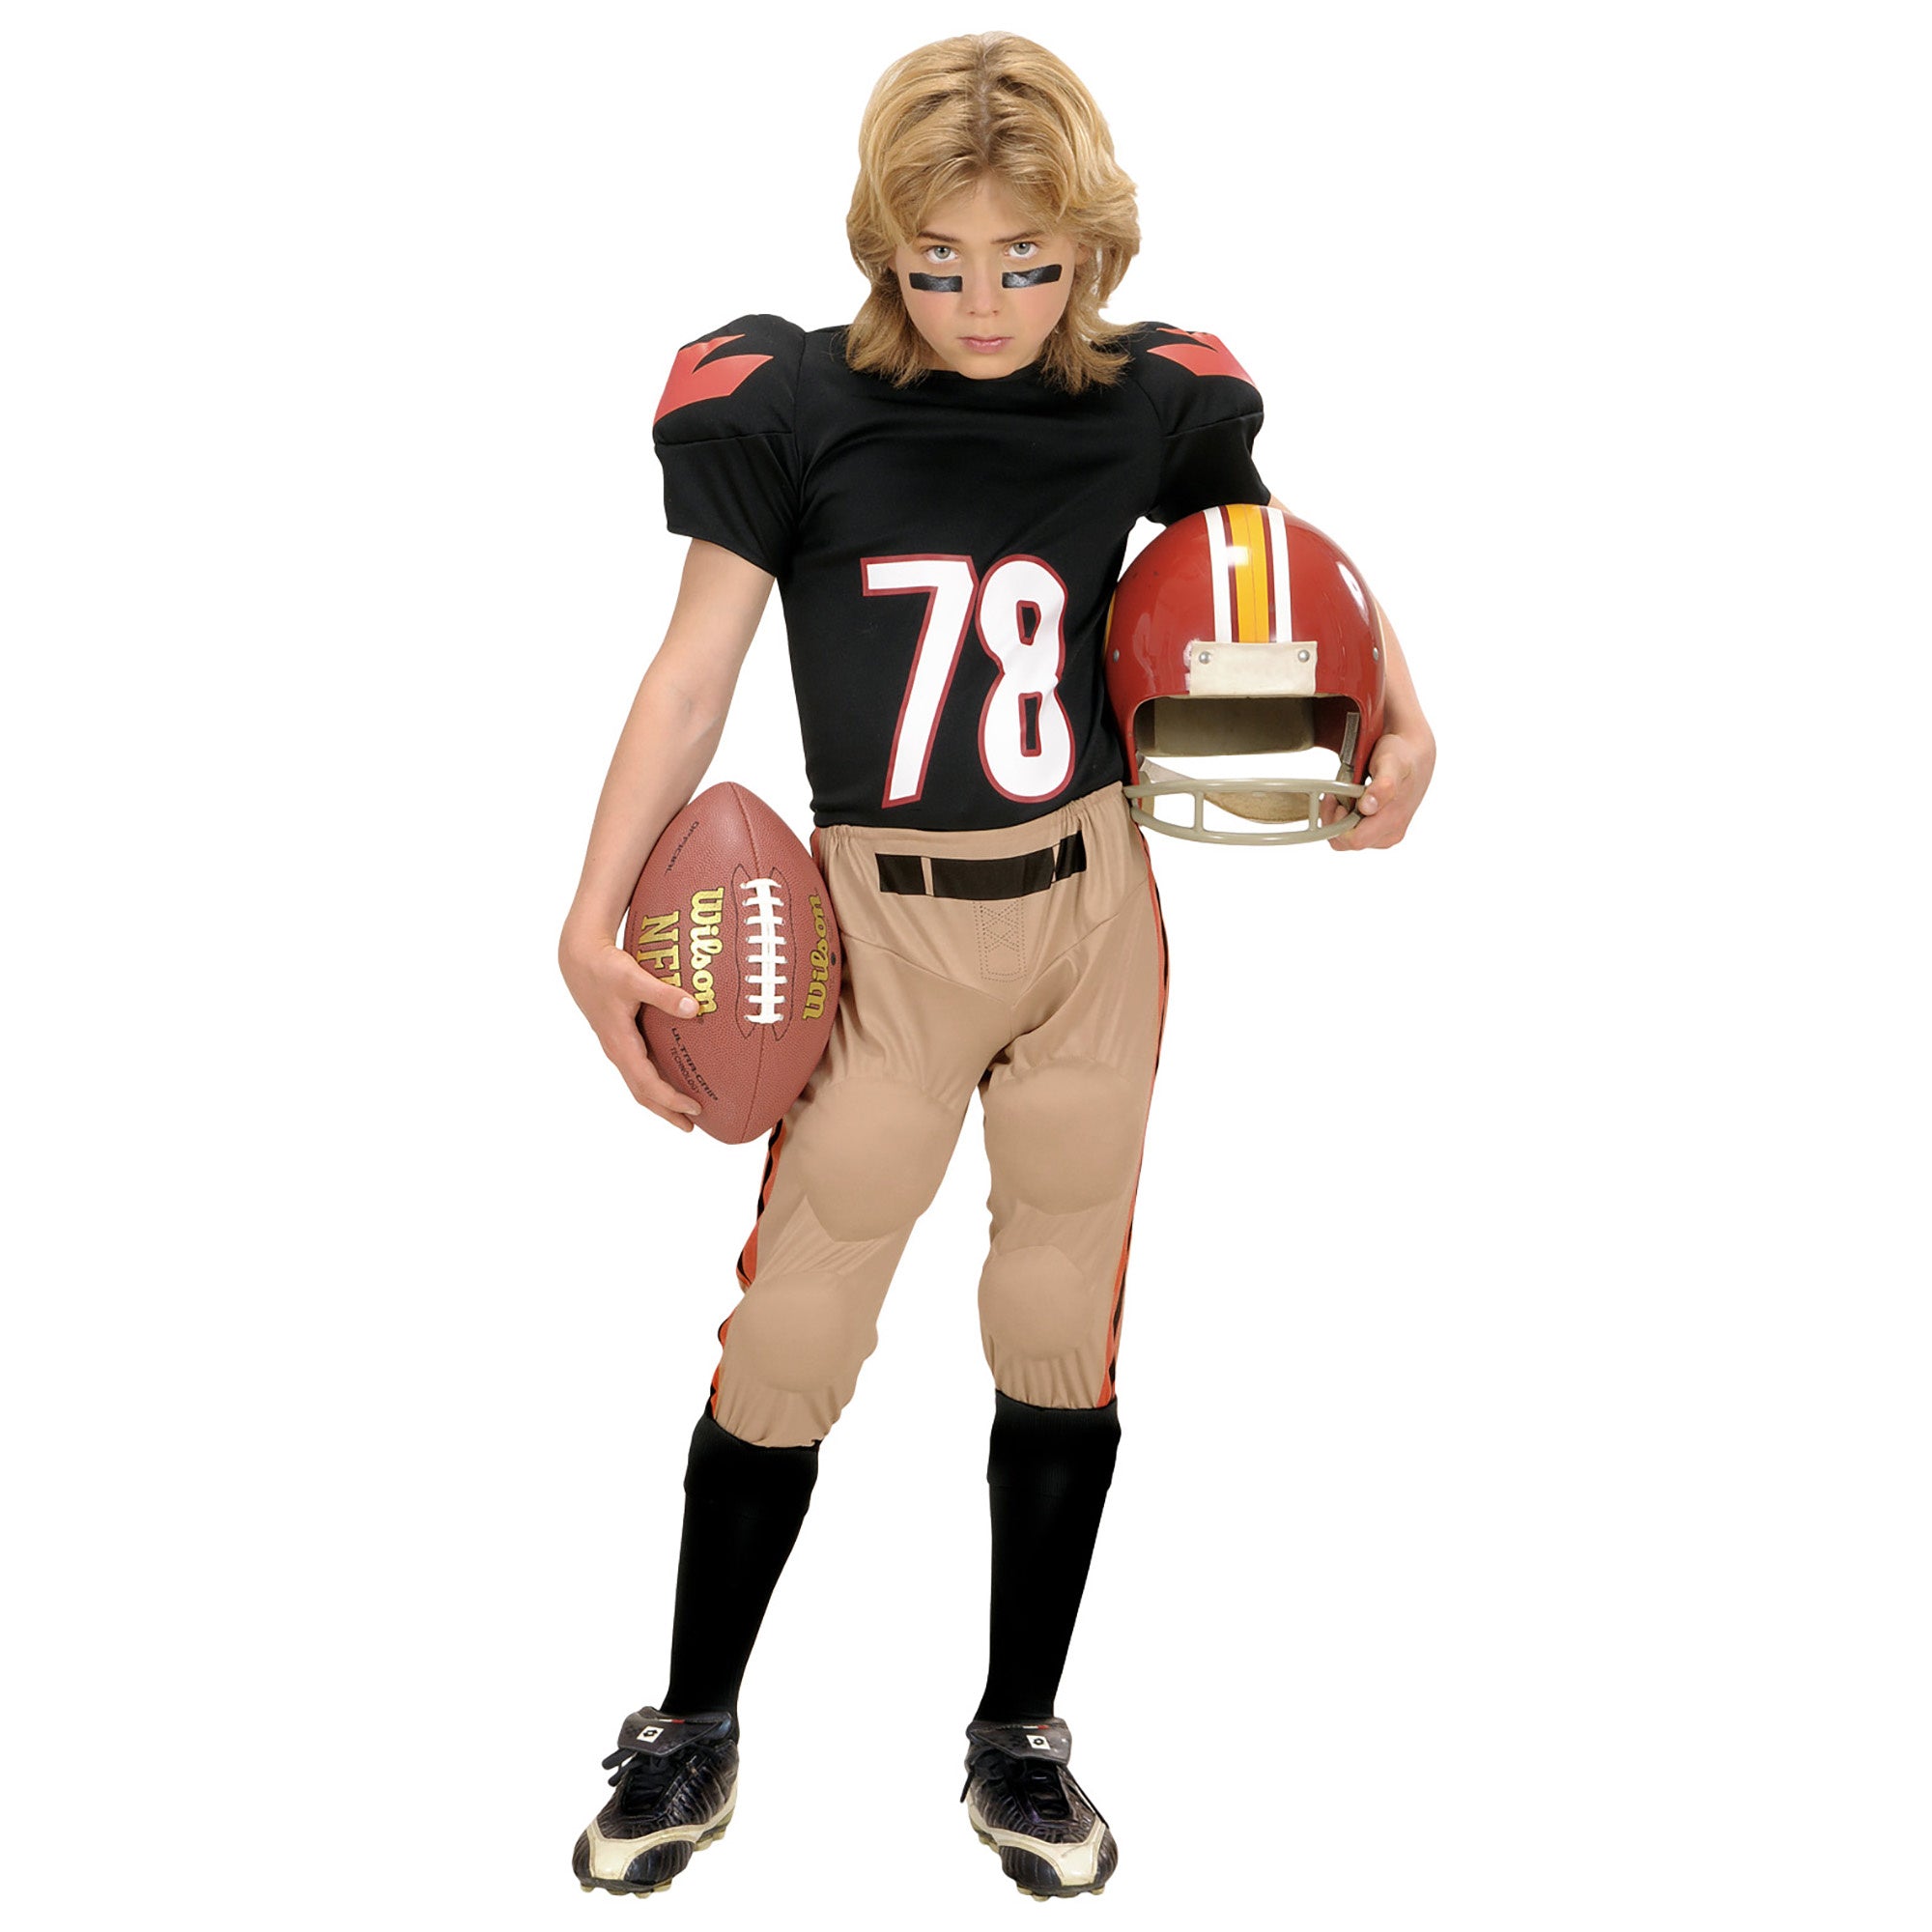 "Amerikaans football speler pak voor jongens  - Kinderkostuums - 128-140"